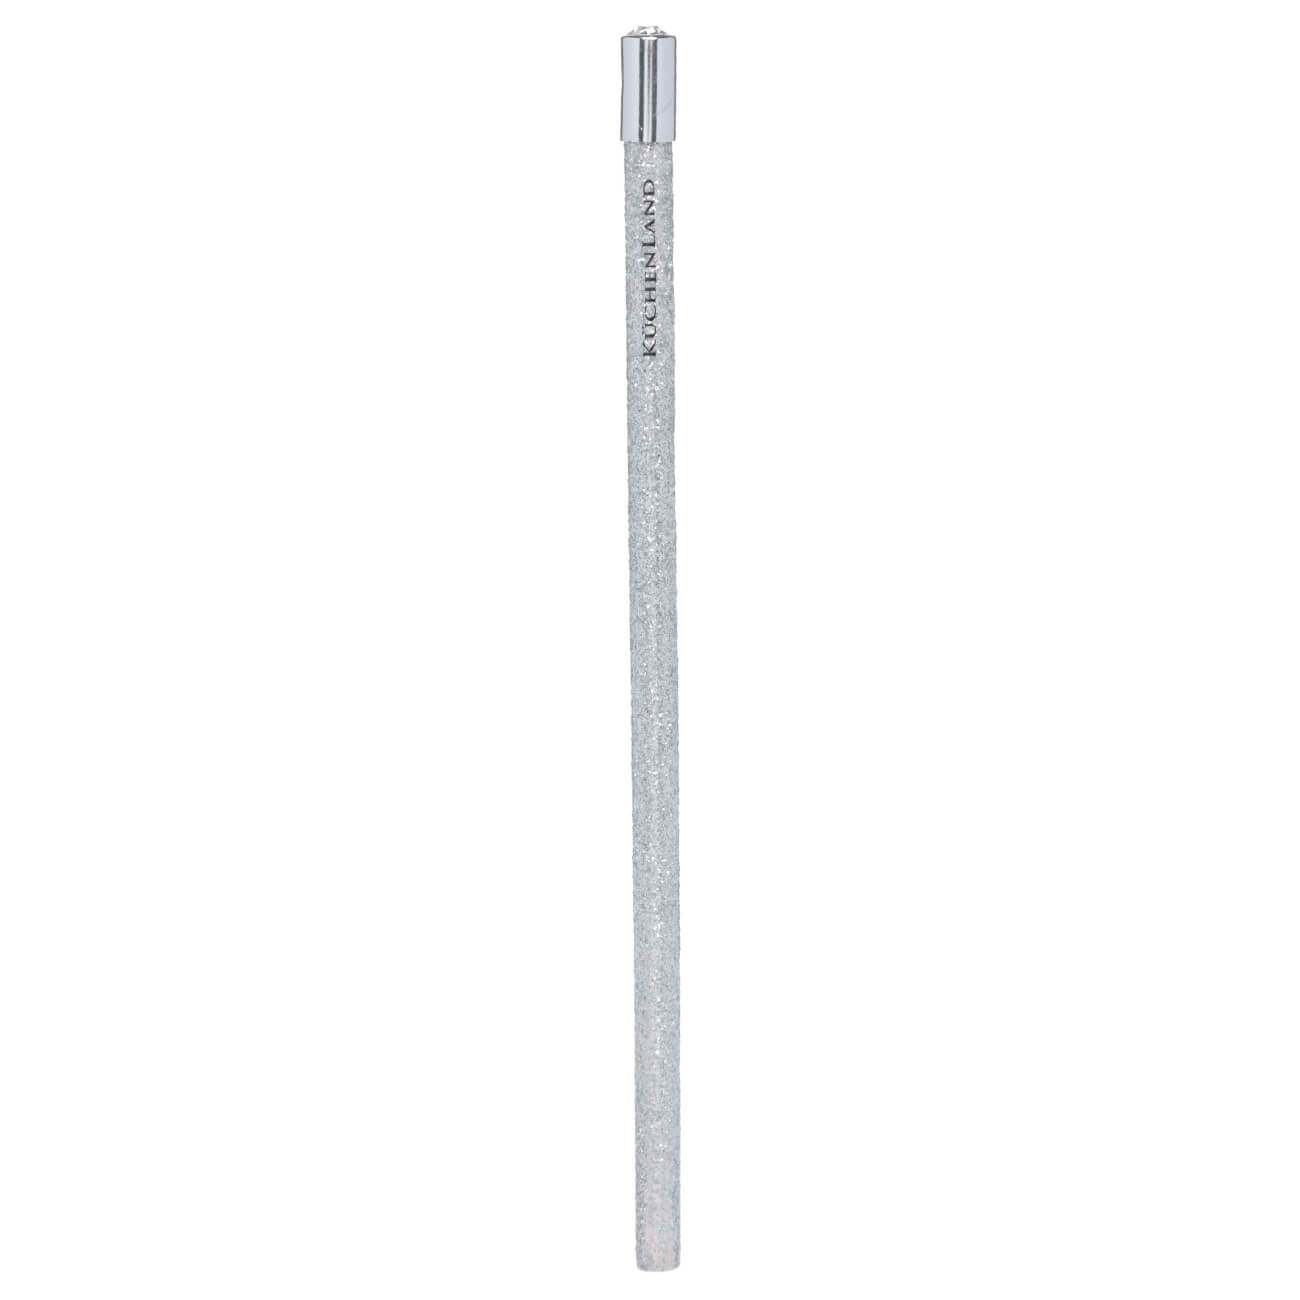 Карандаш, 18 см, чернографитный, серебристый, Draw sparcle карандаш stabilo othello чернографитный 6 шт